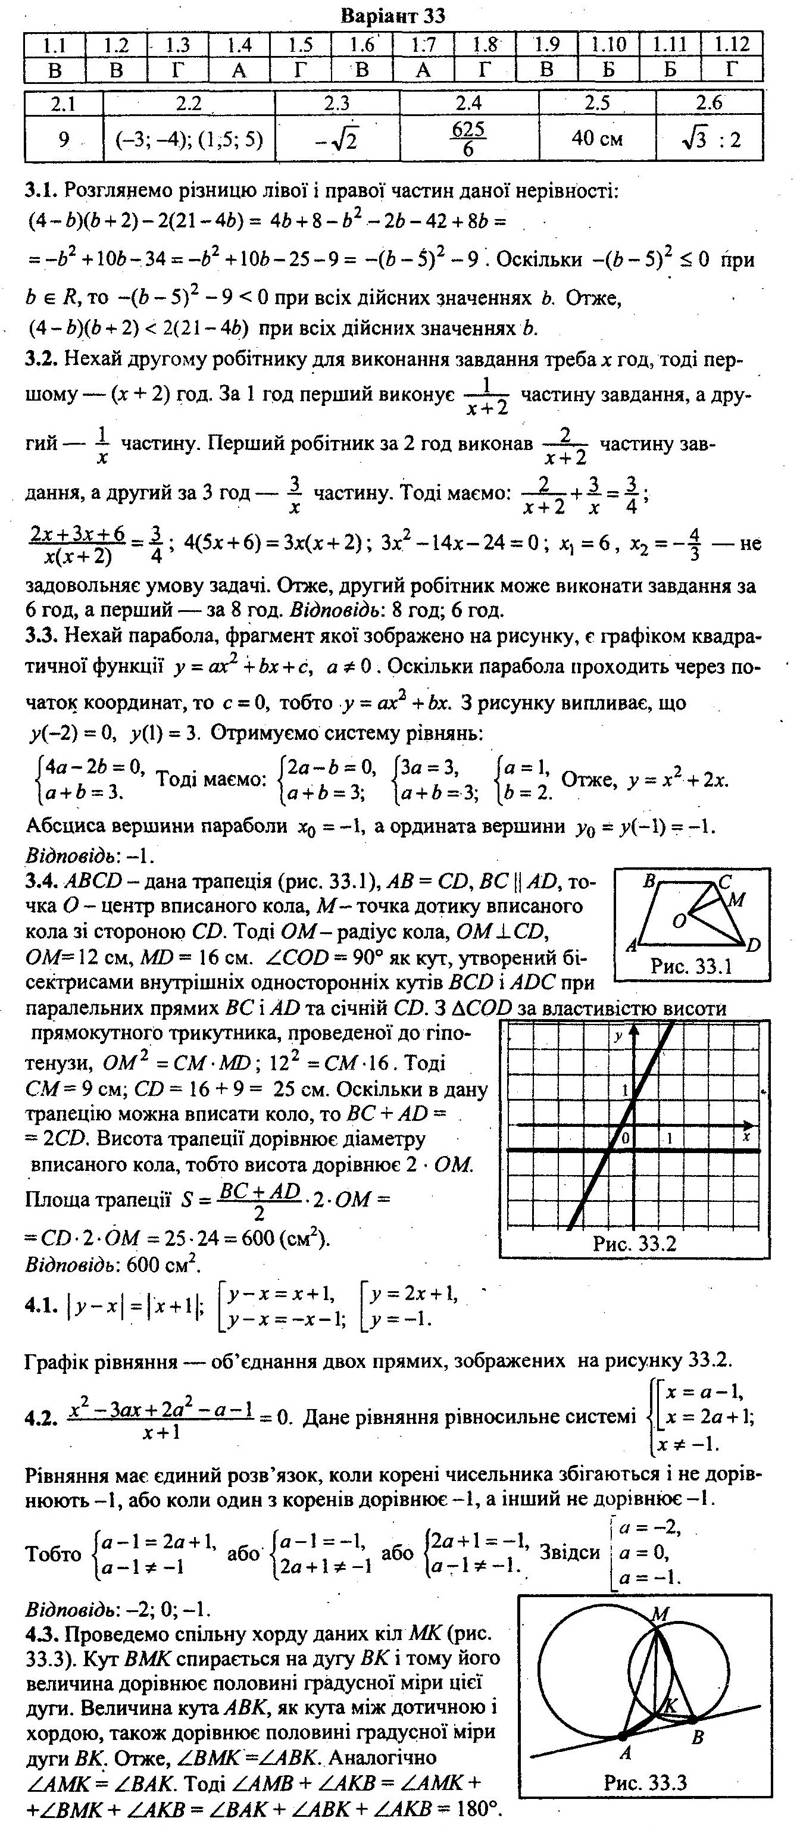 Розв‘язання завдань варіанта 33 до посібника 9 клас Математика. Збірник завдань для ДПА, Мерзляк